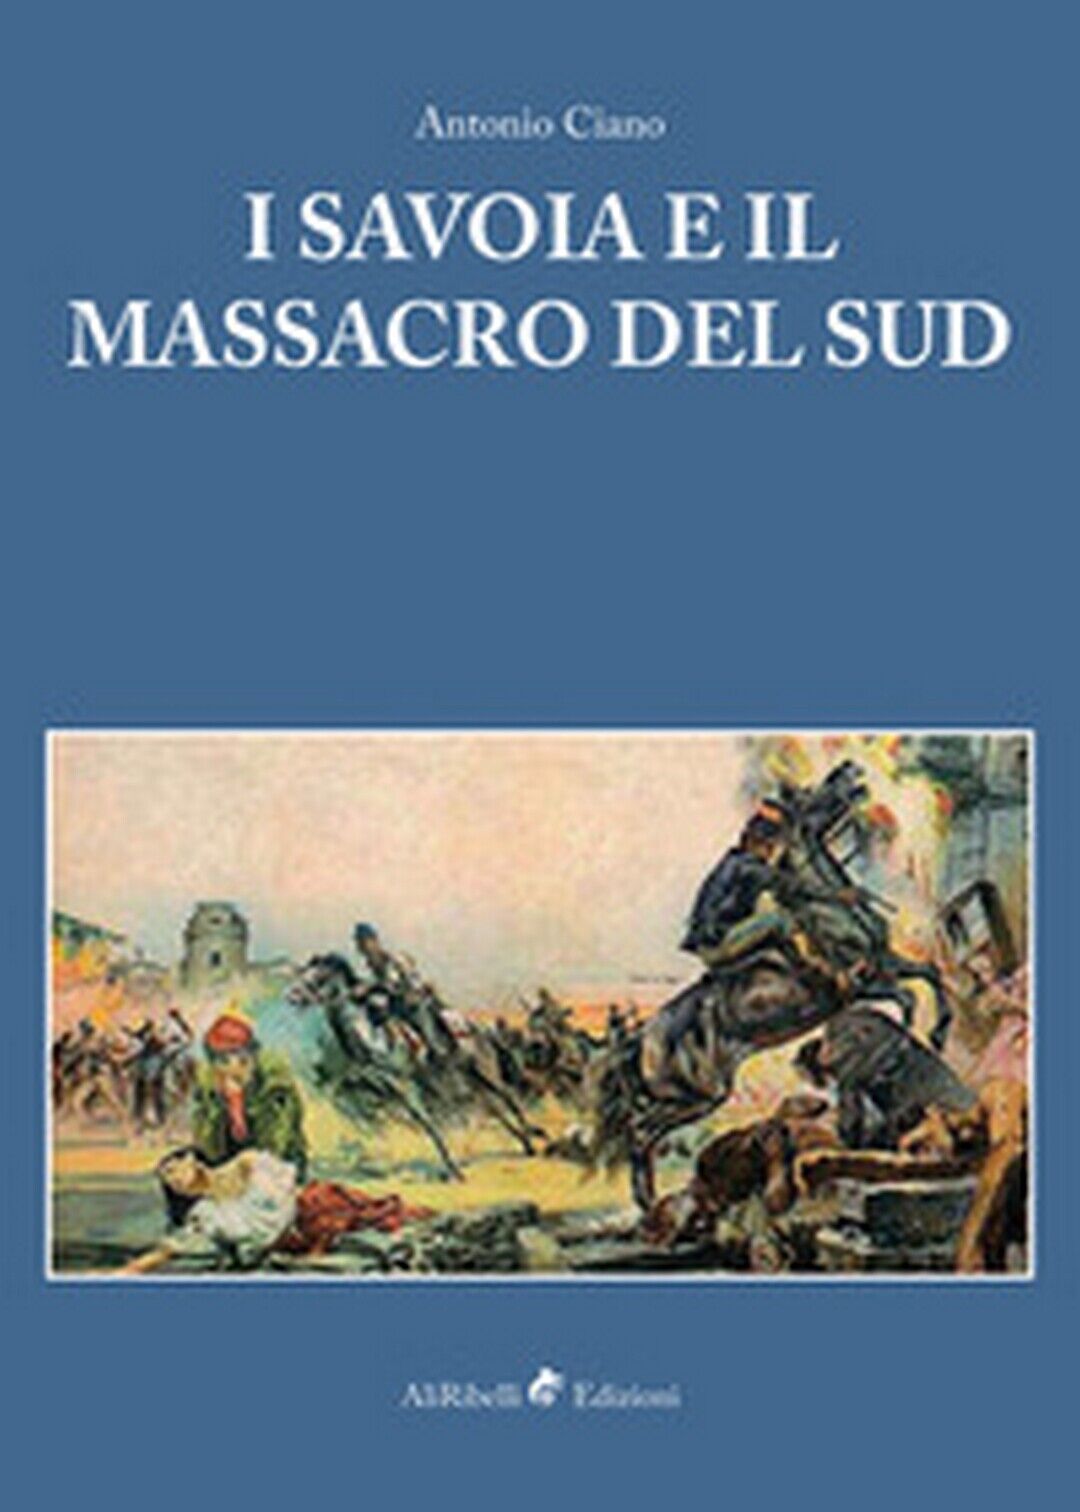 I Savoia e il massacro del sud  - Antonio Ciano, P. Aprile, L. Barone,  2018 libro usato